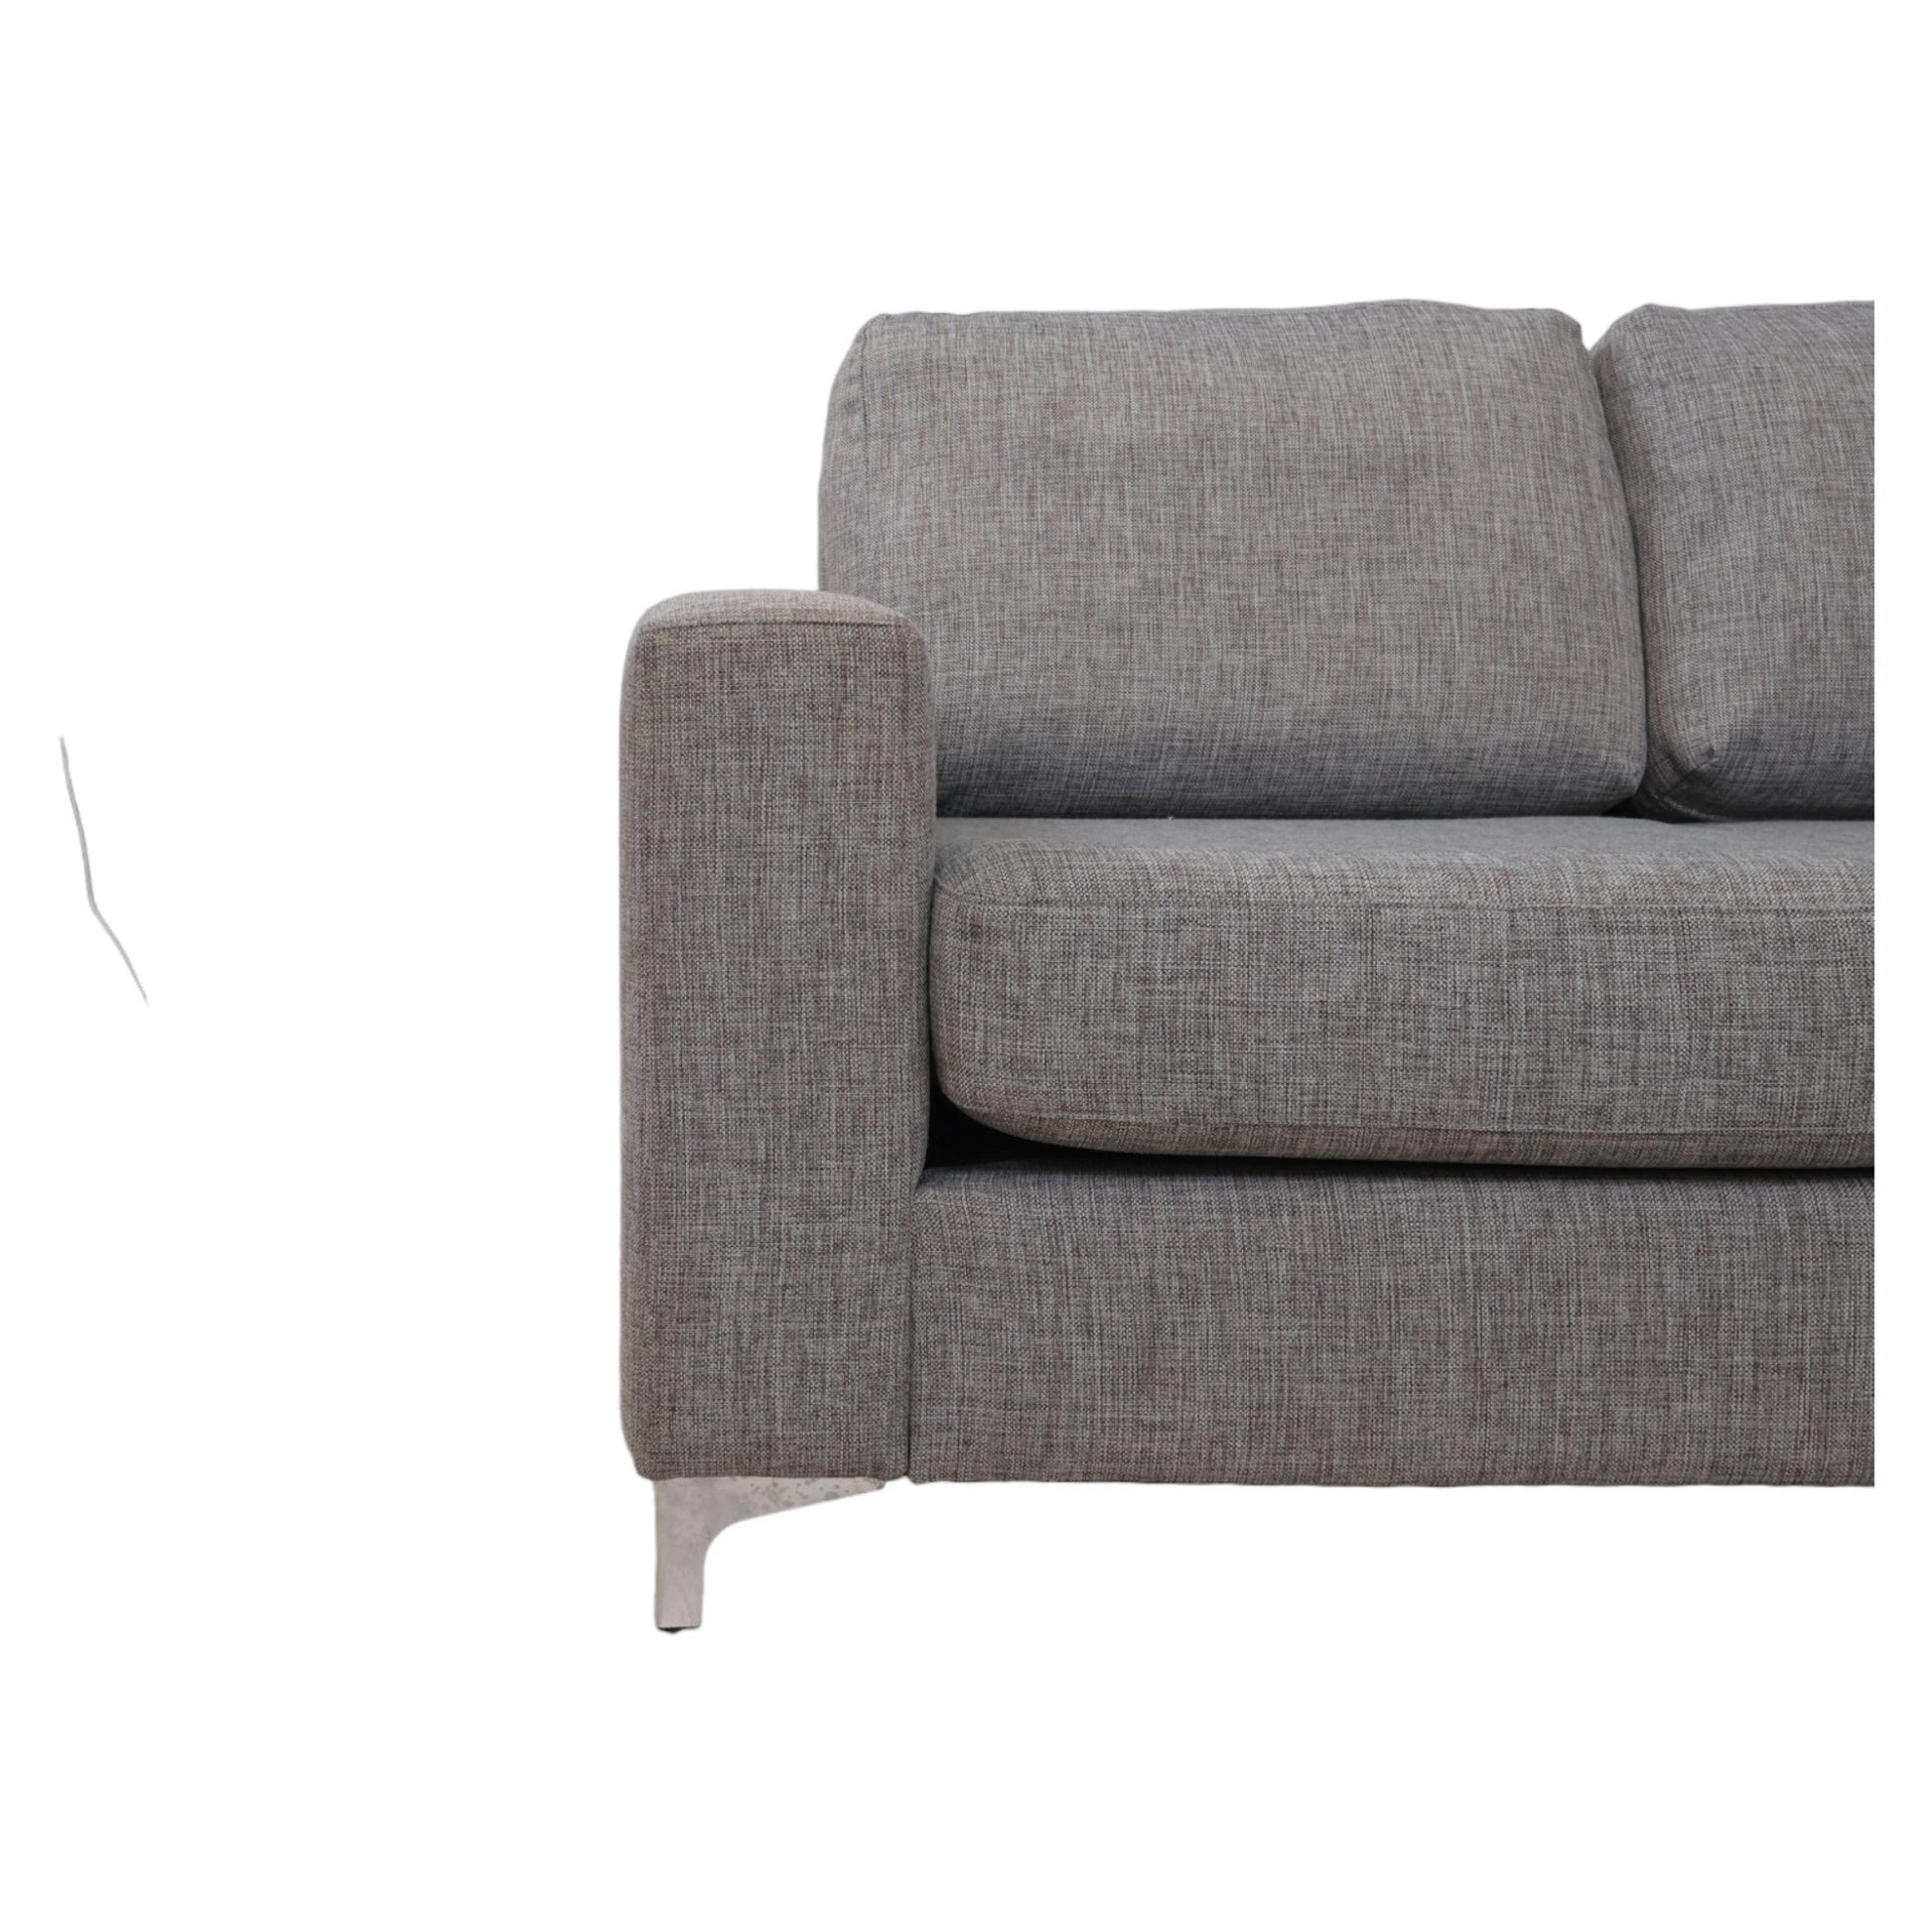 Nyrenset | Romslig grå u-sofa med sjeselong